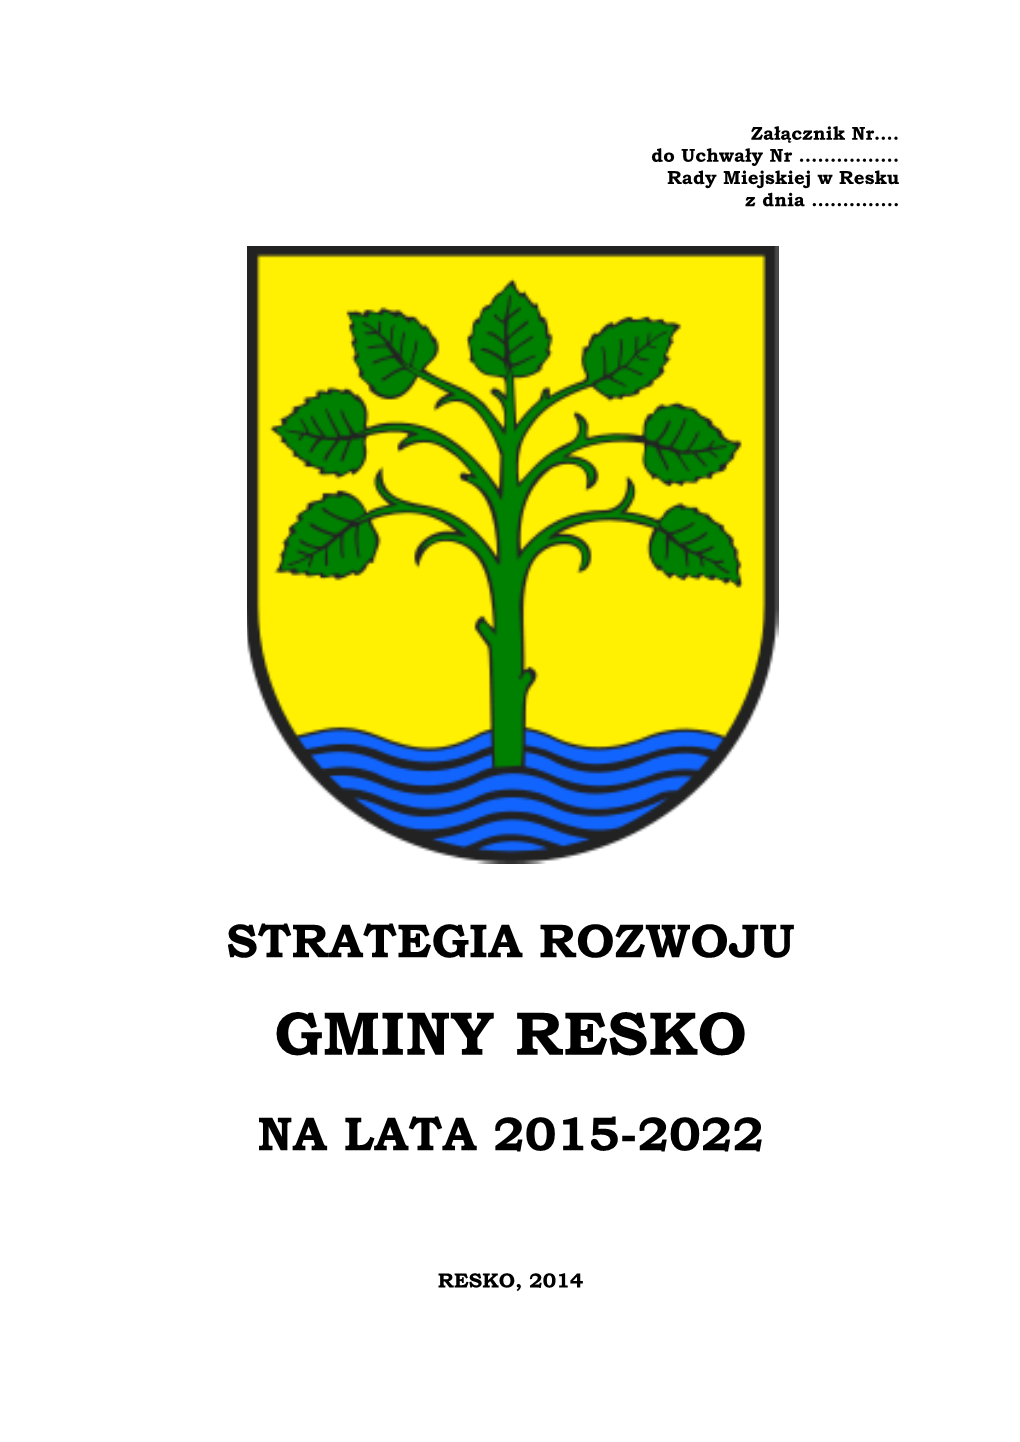 Gminy Resko Na Lata 2015-2022